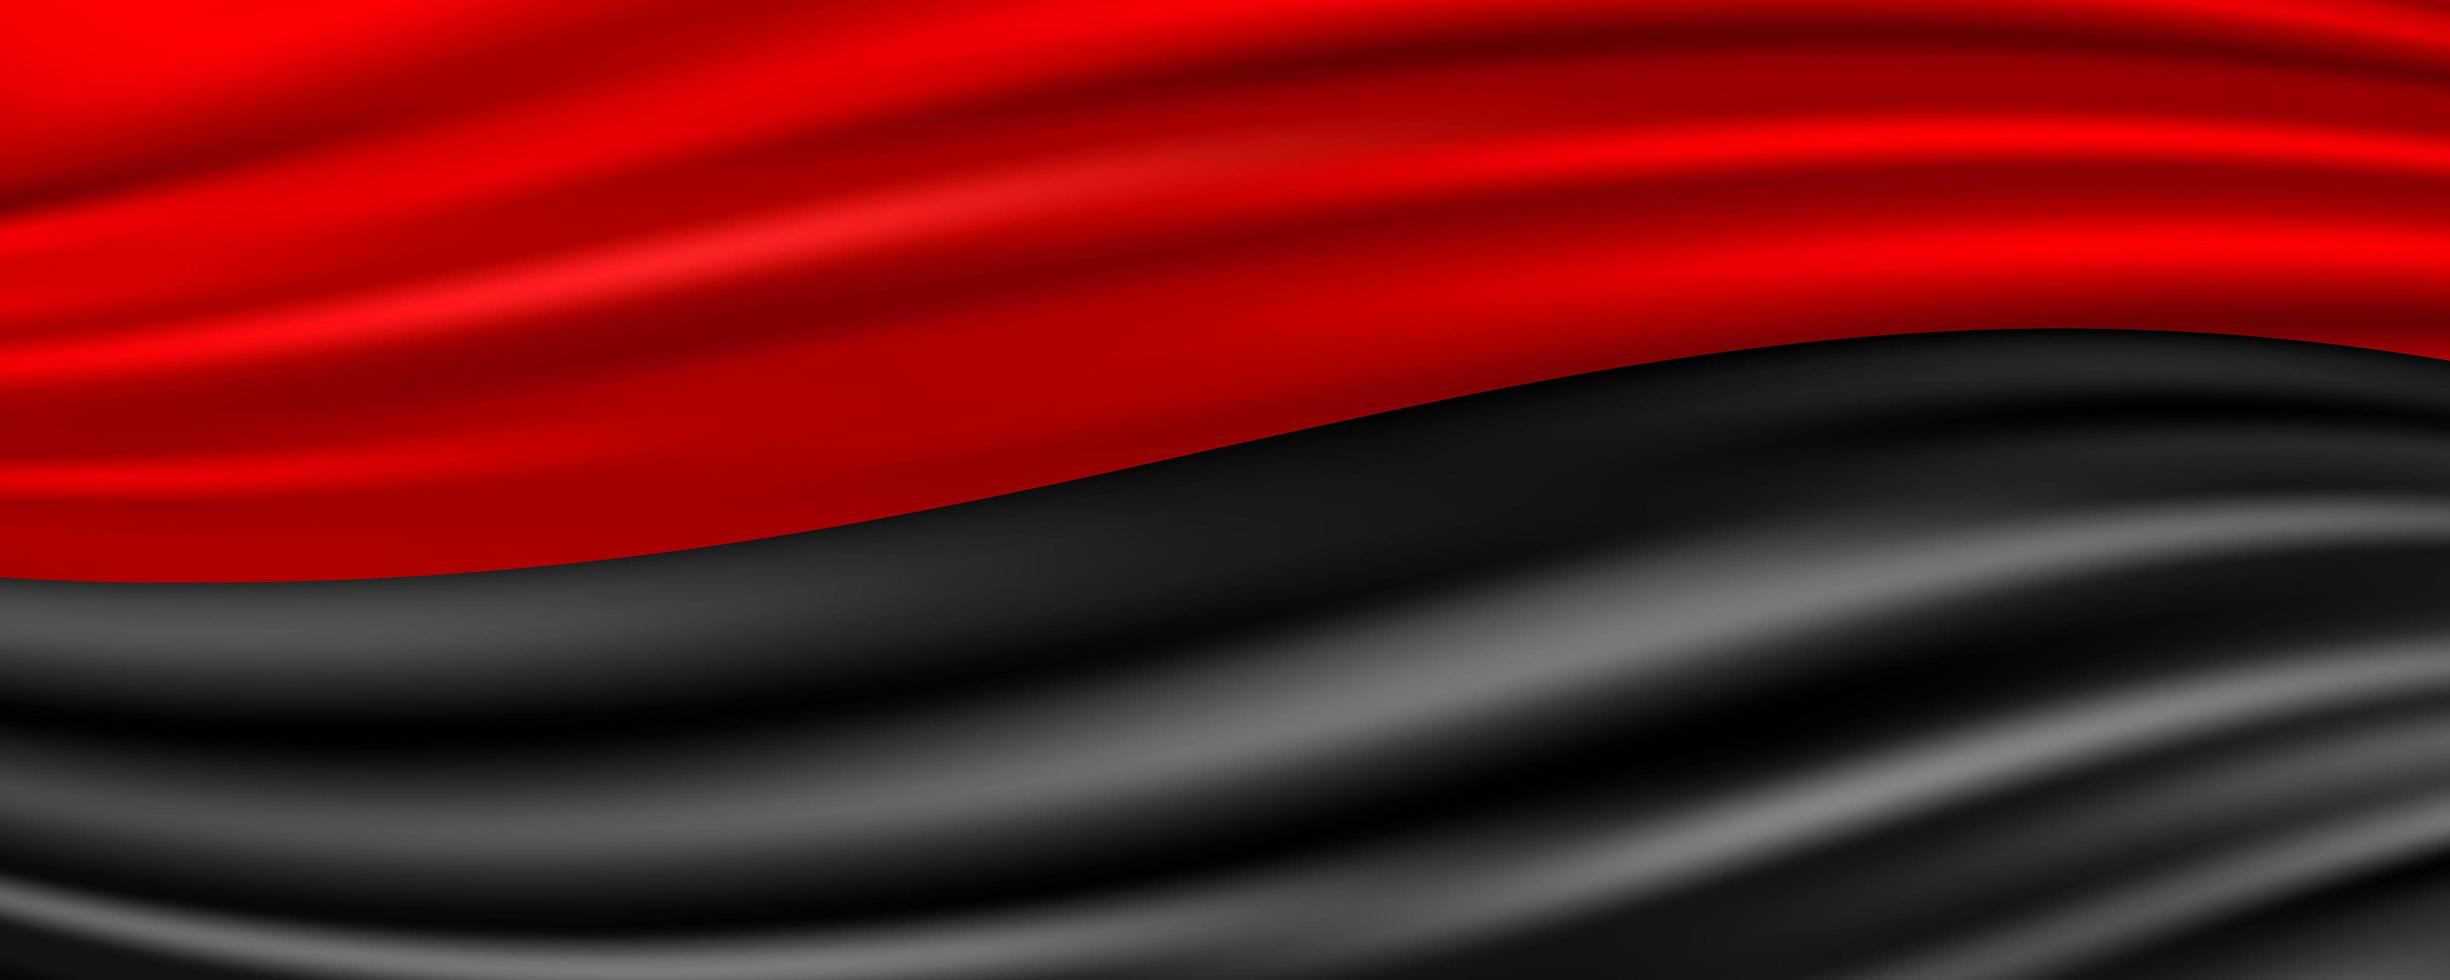 abstrakter Hintergrund des roten und schwarzen Seidengewebes vektor